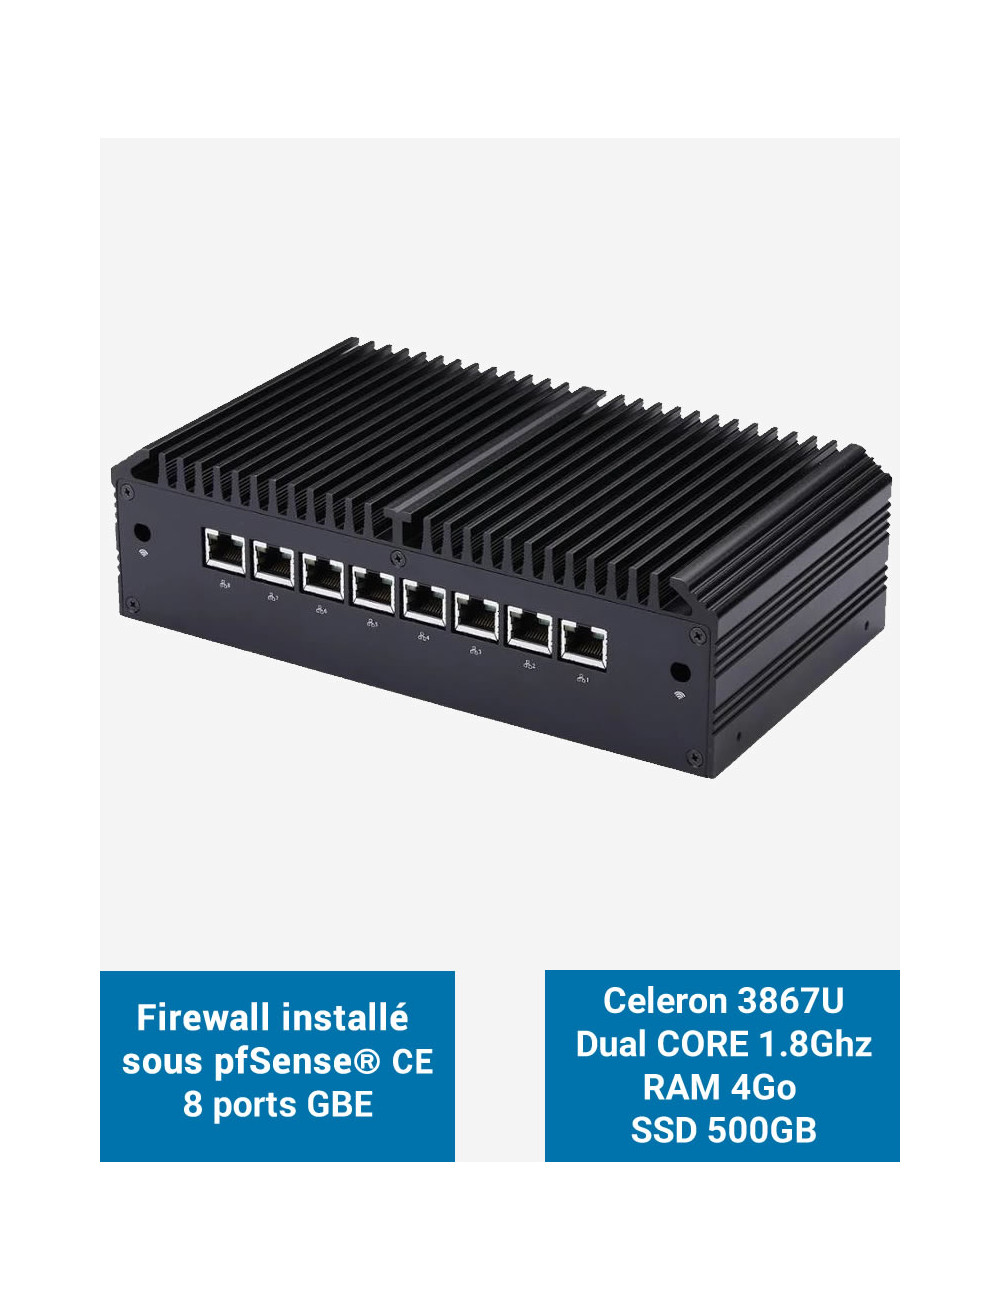 Firewall Q8x Celeron 3867U 8 ports GbE 4GB 500GB